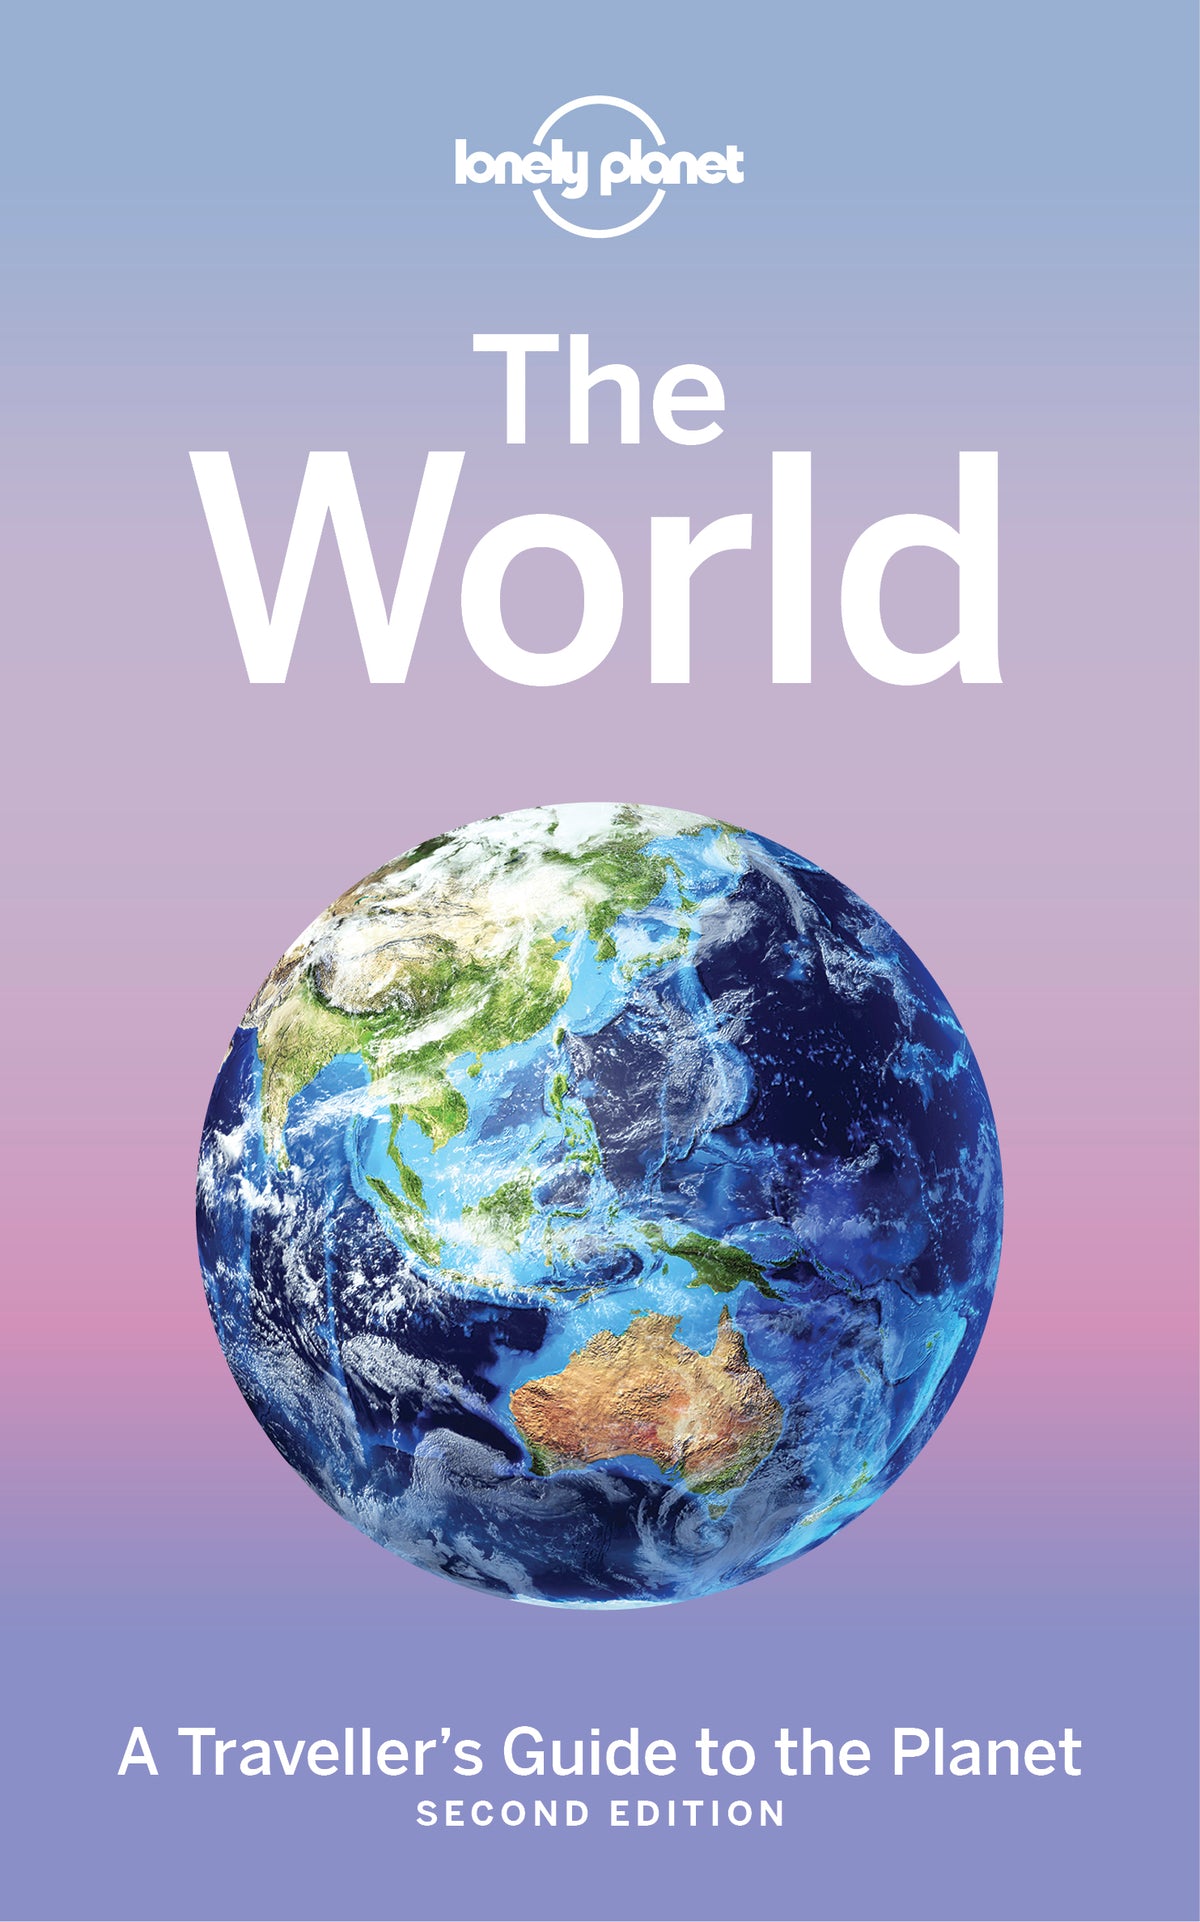 7 WONDERS OF THE WORLD - DIGITAL BOOKLET